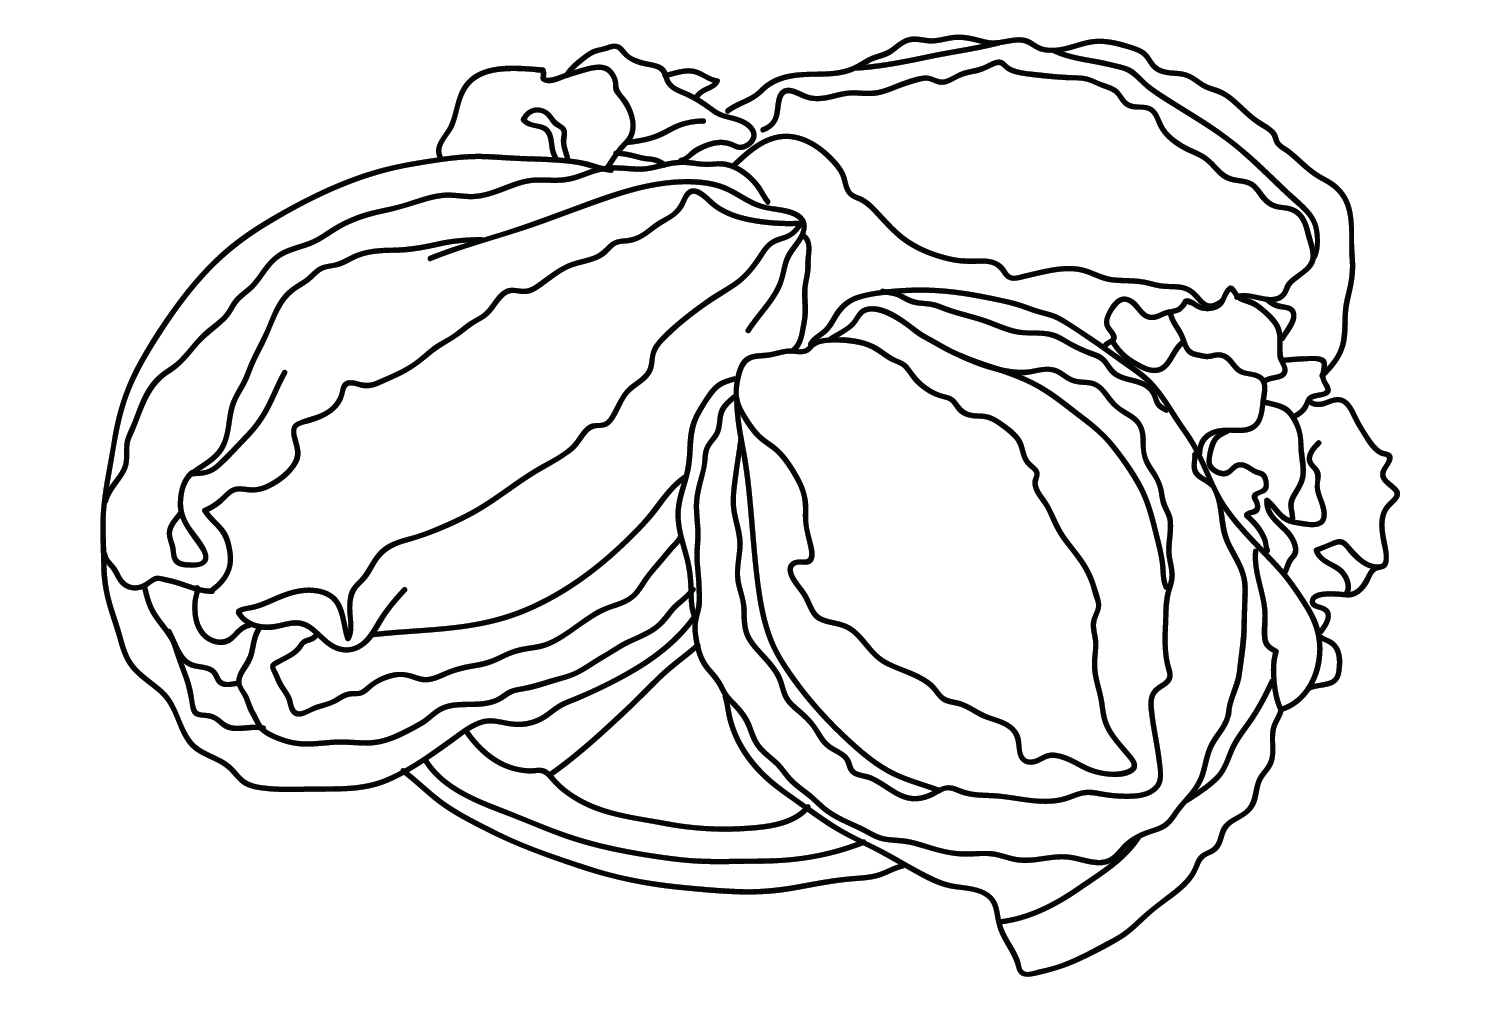 Картинки для раскрашивания морского ушка из морского ушка